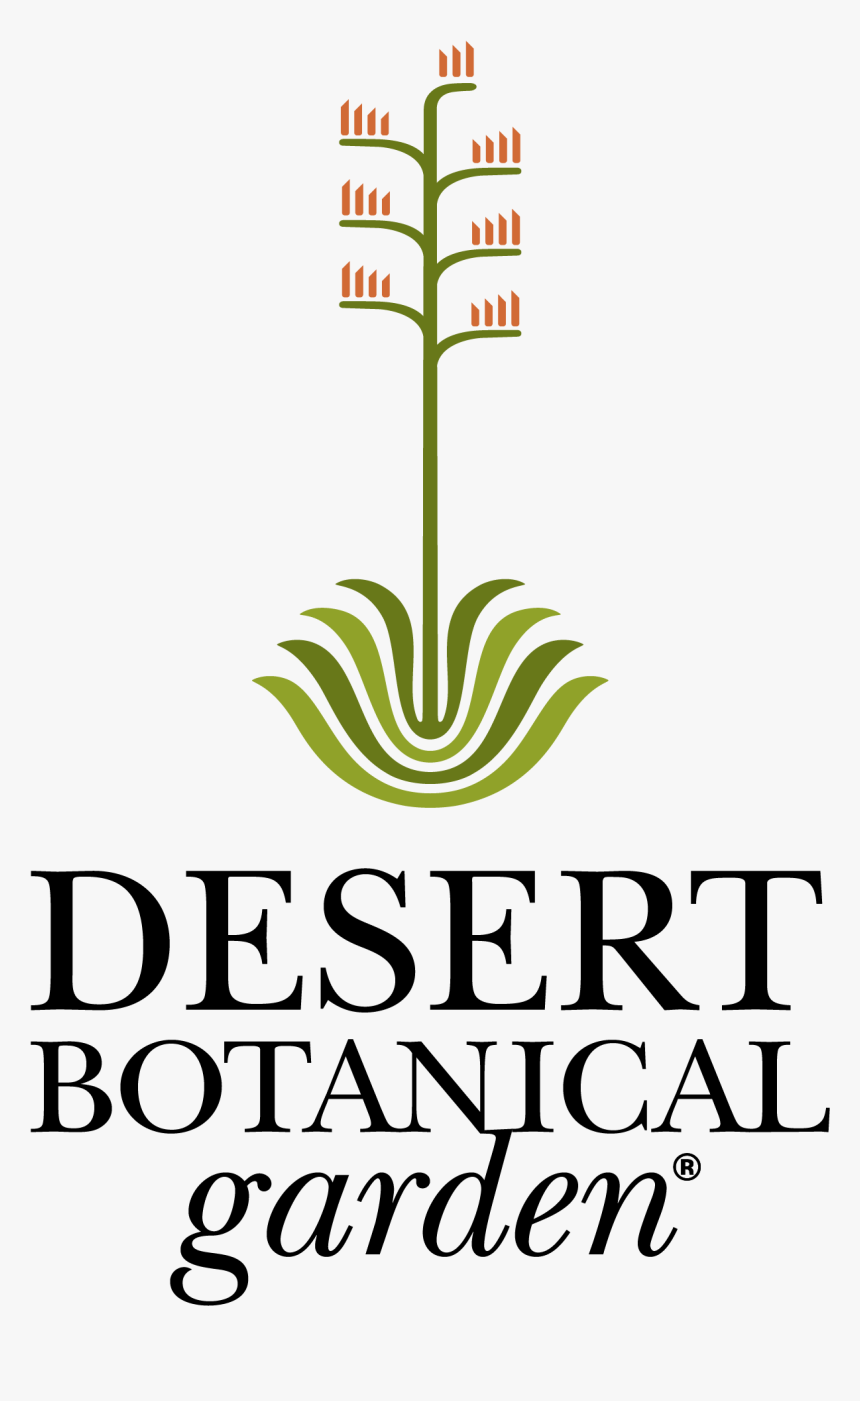 Arizona Botanical Garden Sign, HD Png Download, Free Download